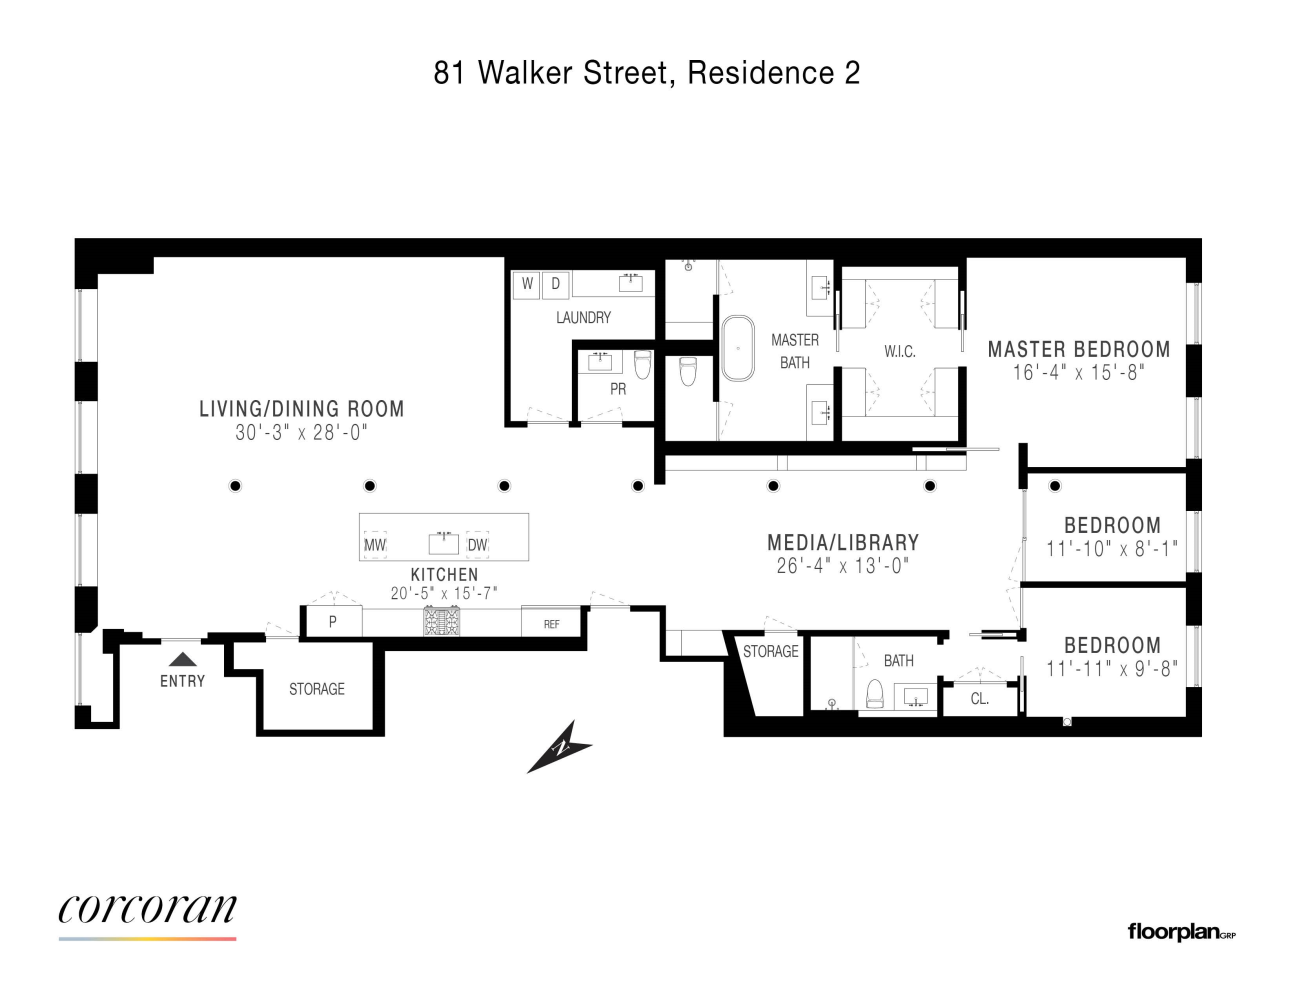 Floorplan for 81 Walker Street, 2